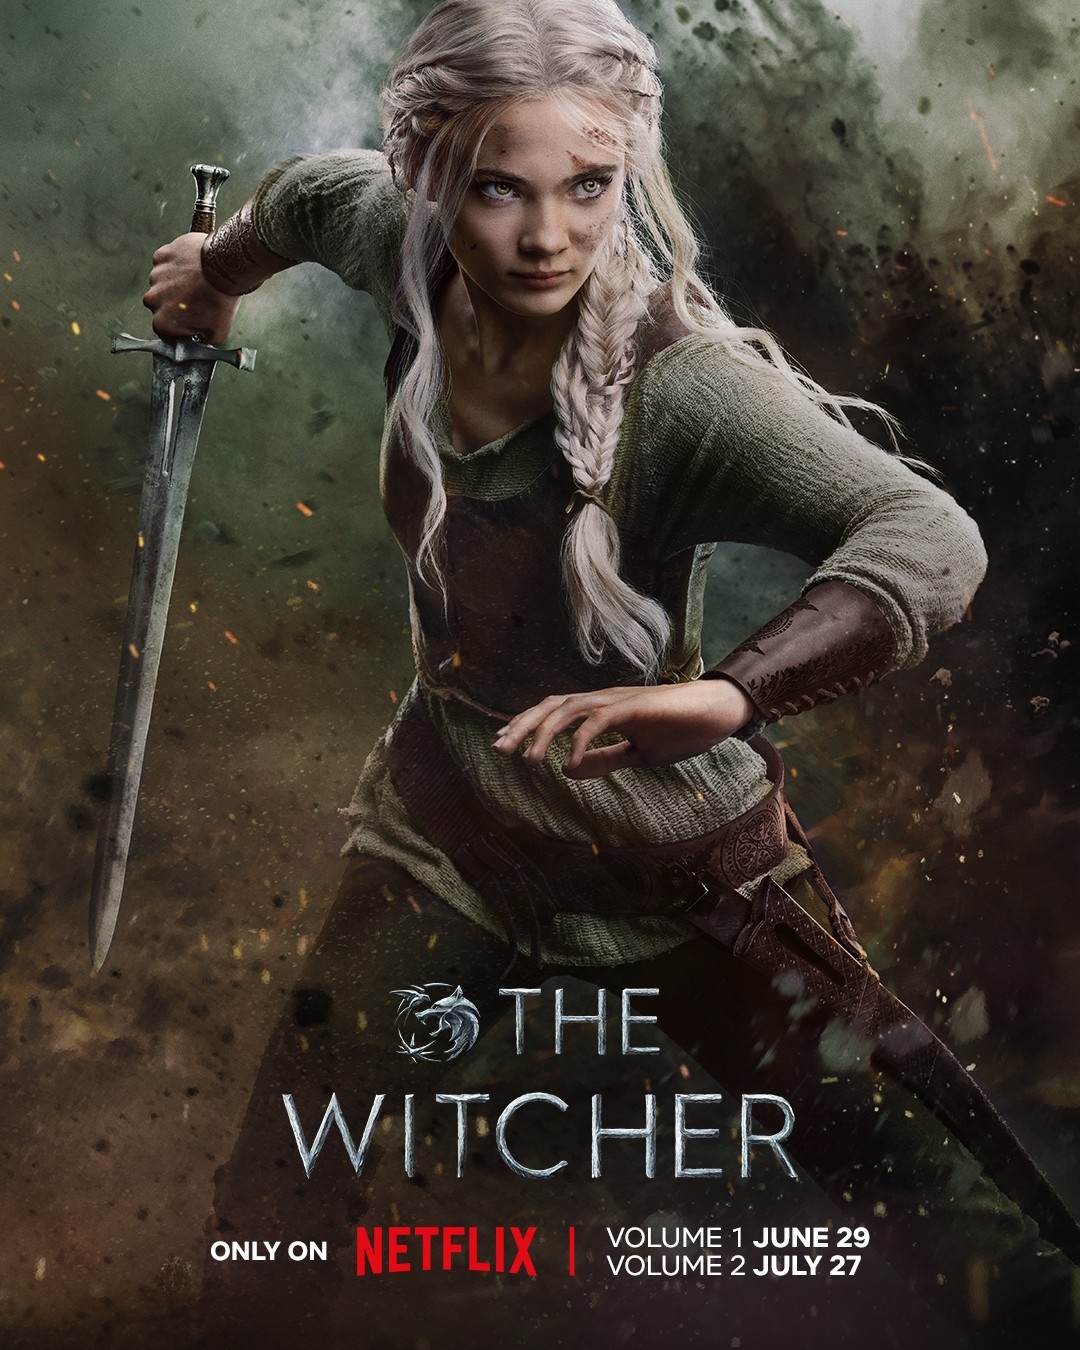 The Witcher: Season 3, Volume 1